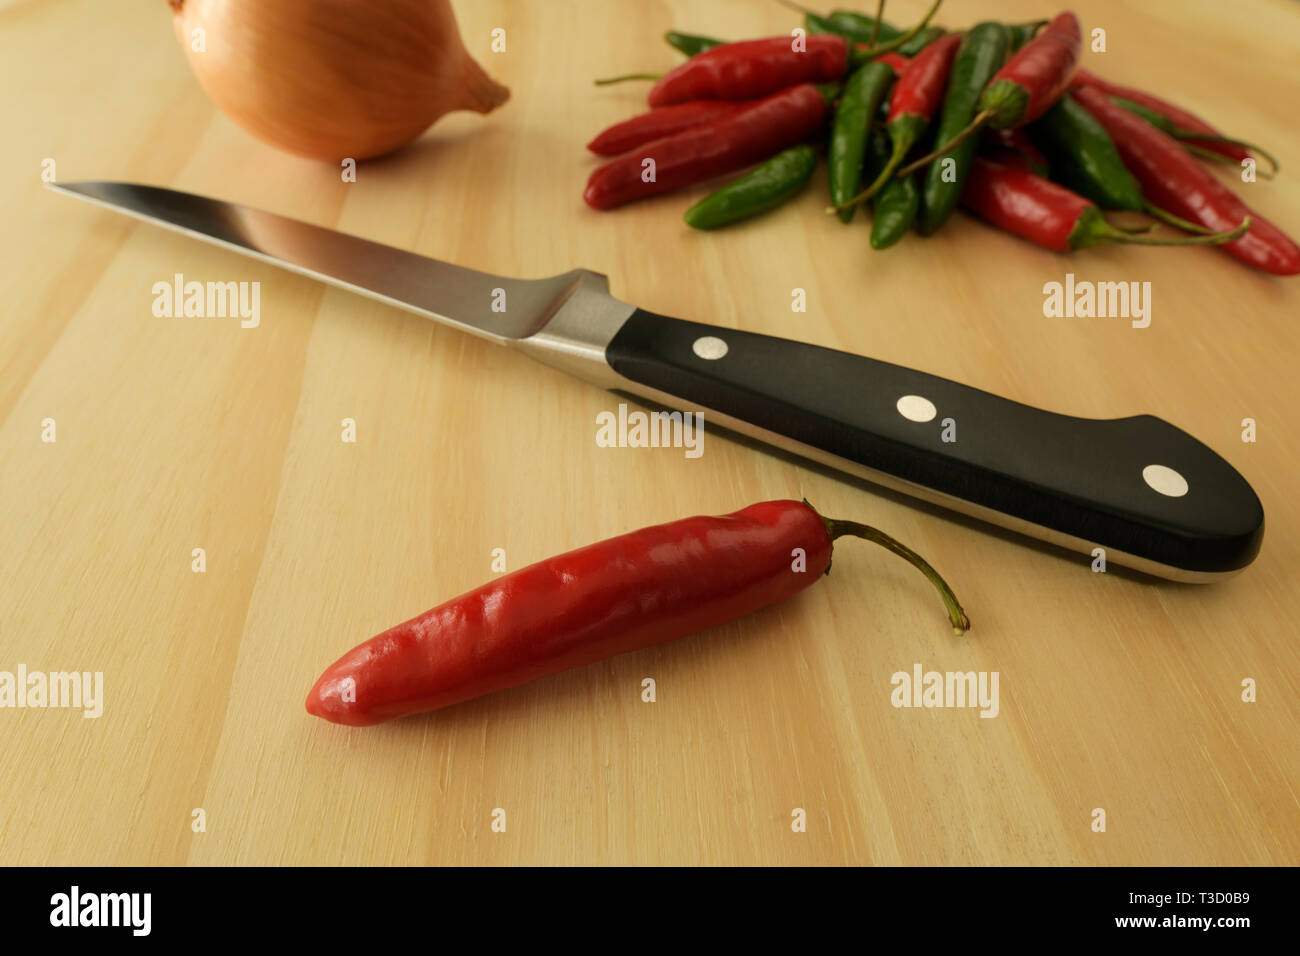 Nahaufnahme, Detail, Stillleben von red chili und Messer mit Lebensmittelzutaten, kochen Vorbereitung auf Holz- Oberfläche, Objekte, Spice Stockfoto